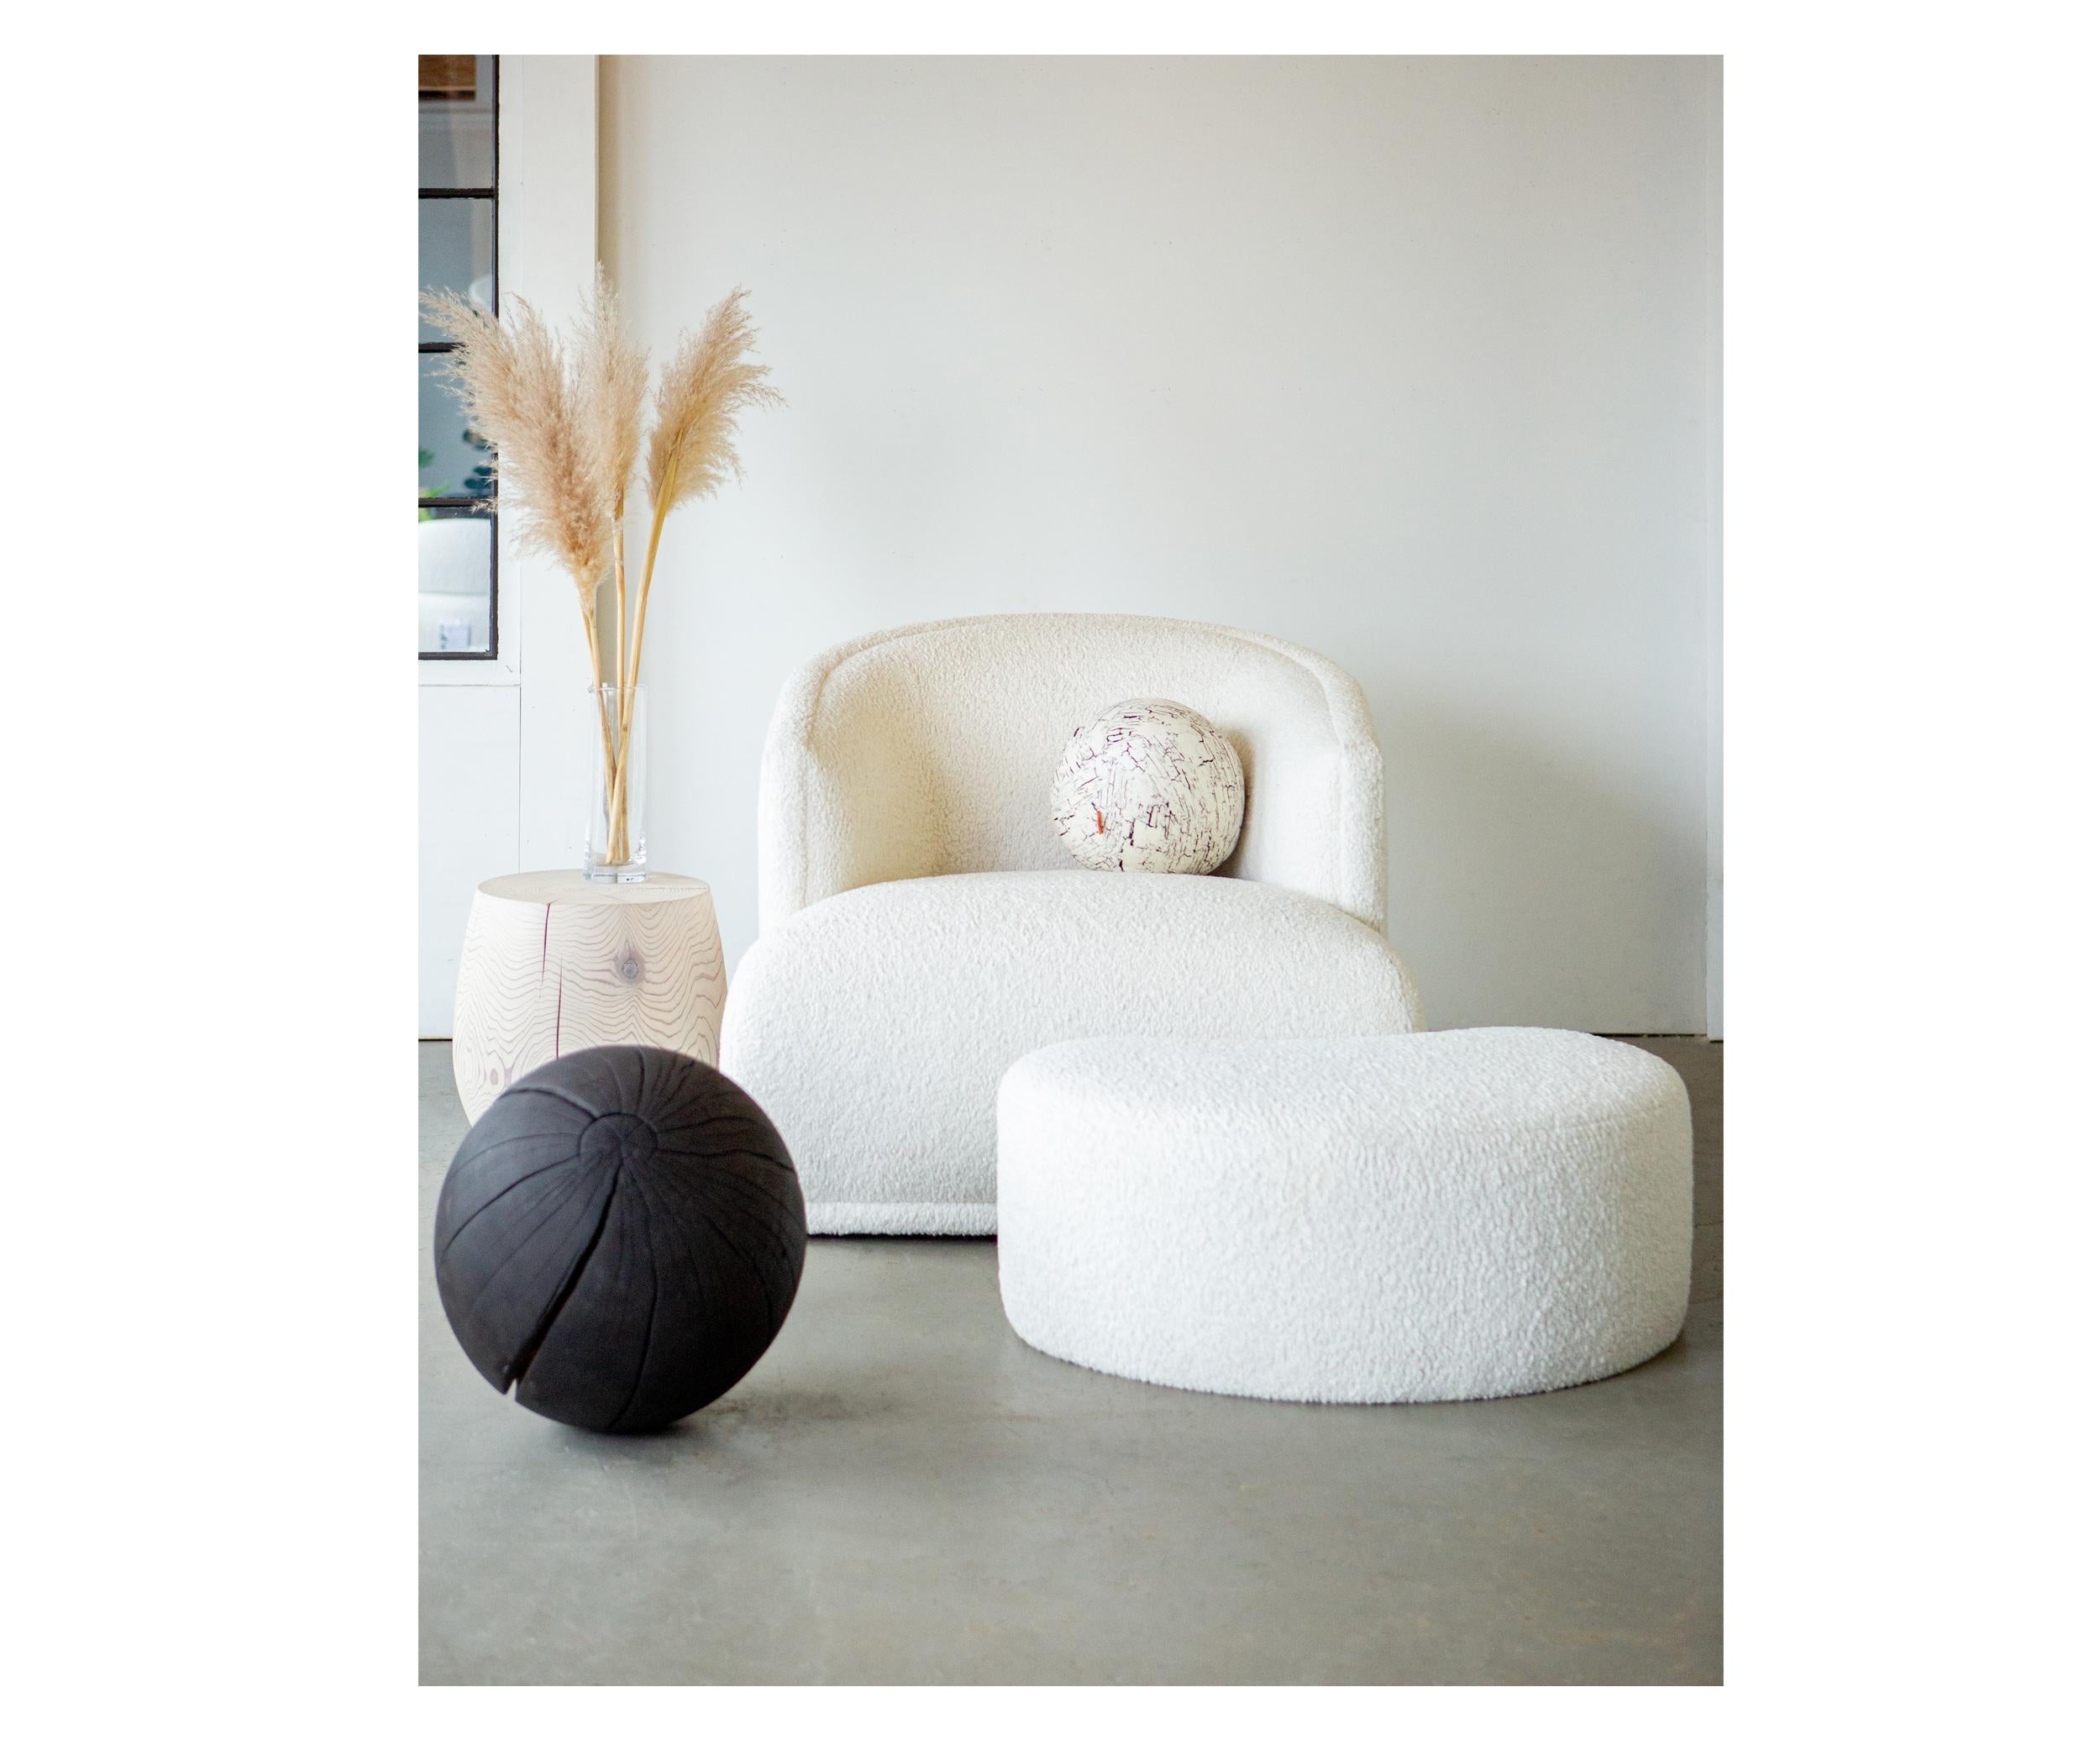 Der Mallo Swivel Chair ist nicht einfach nur ein Stuhl, er ist ein Statement für Stil und Komfort. Mit seinem anspruchsvollen und zugleich ansprechenden Design lädt er dazu ein, es sich gemütlich zu machen. Die weichen Rundungen umschließen Ihren